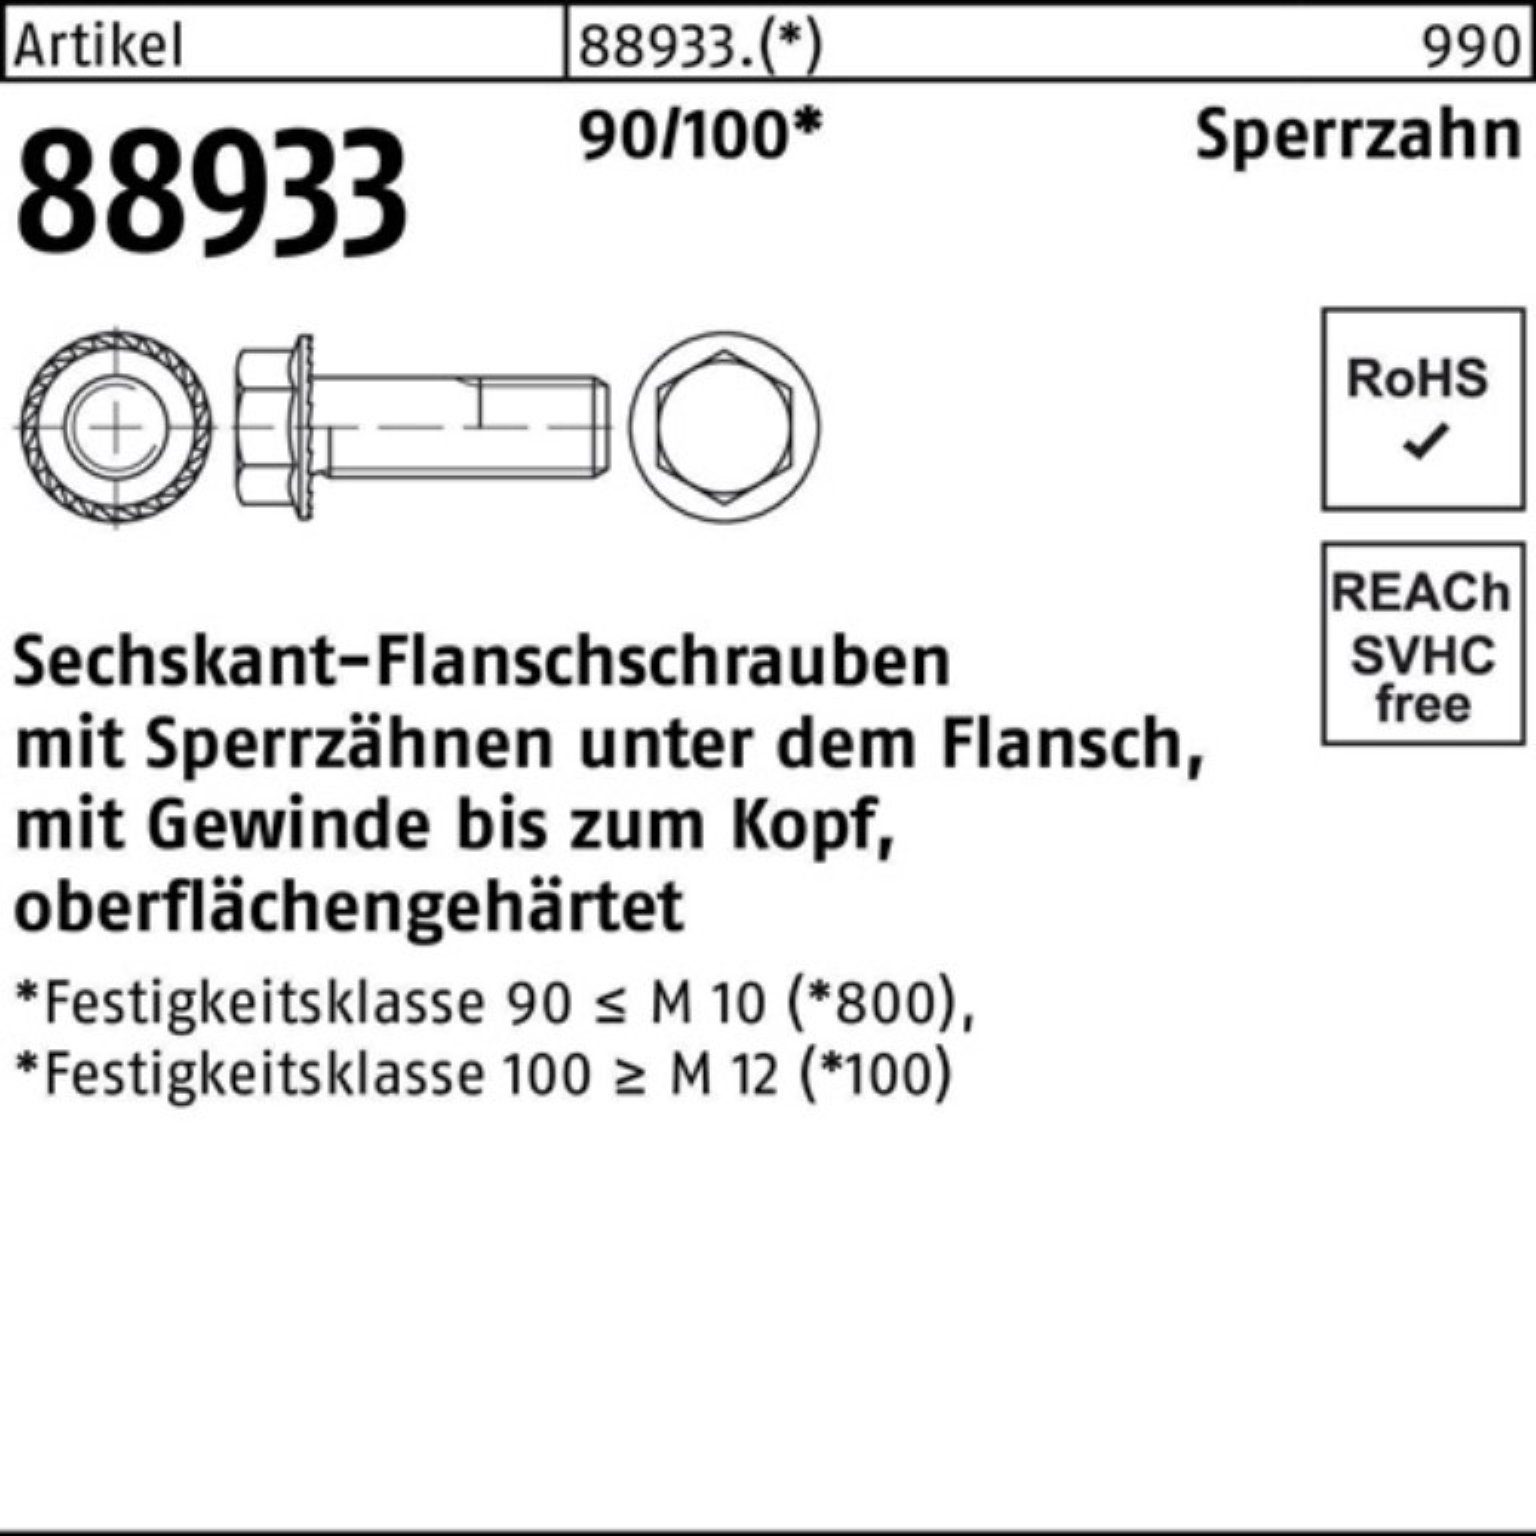 Reyher Schraube 500er VG 5 R M5x Sperrz. Sechskantflanschschraube 90/100 88933 14 Pack